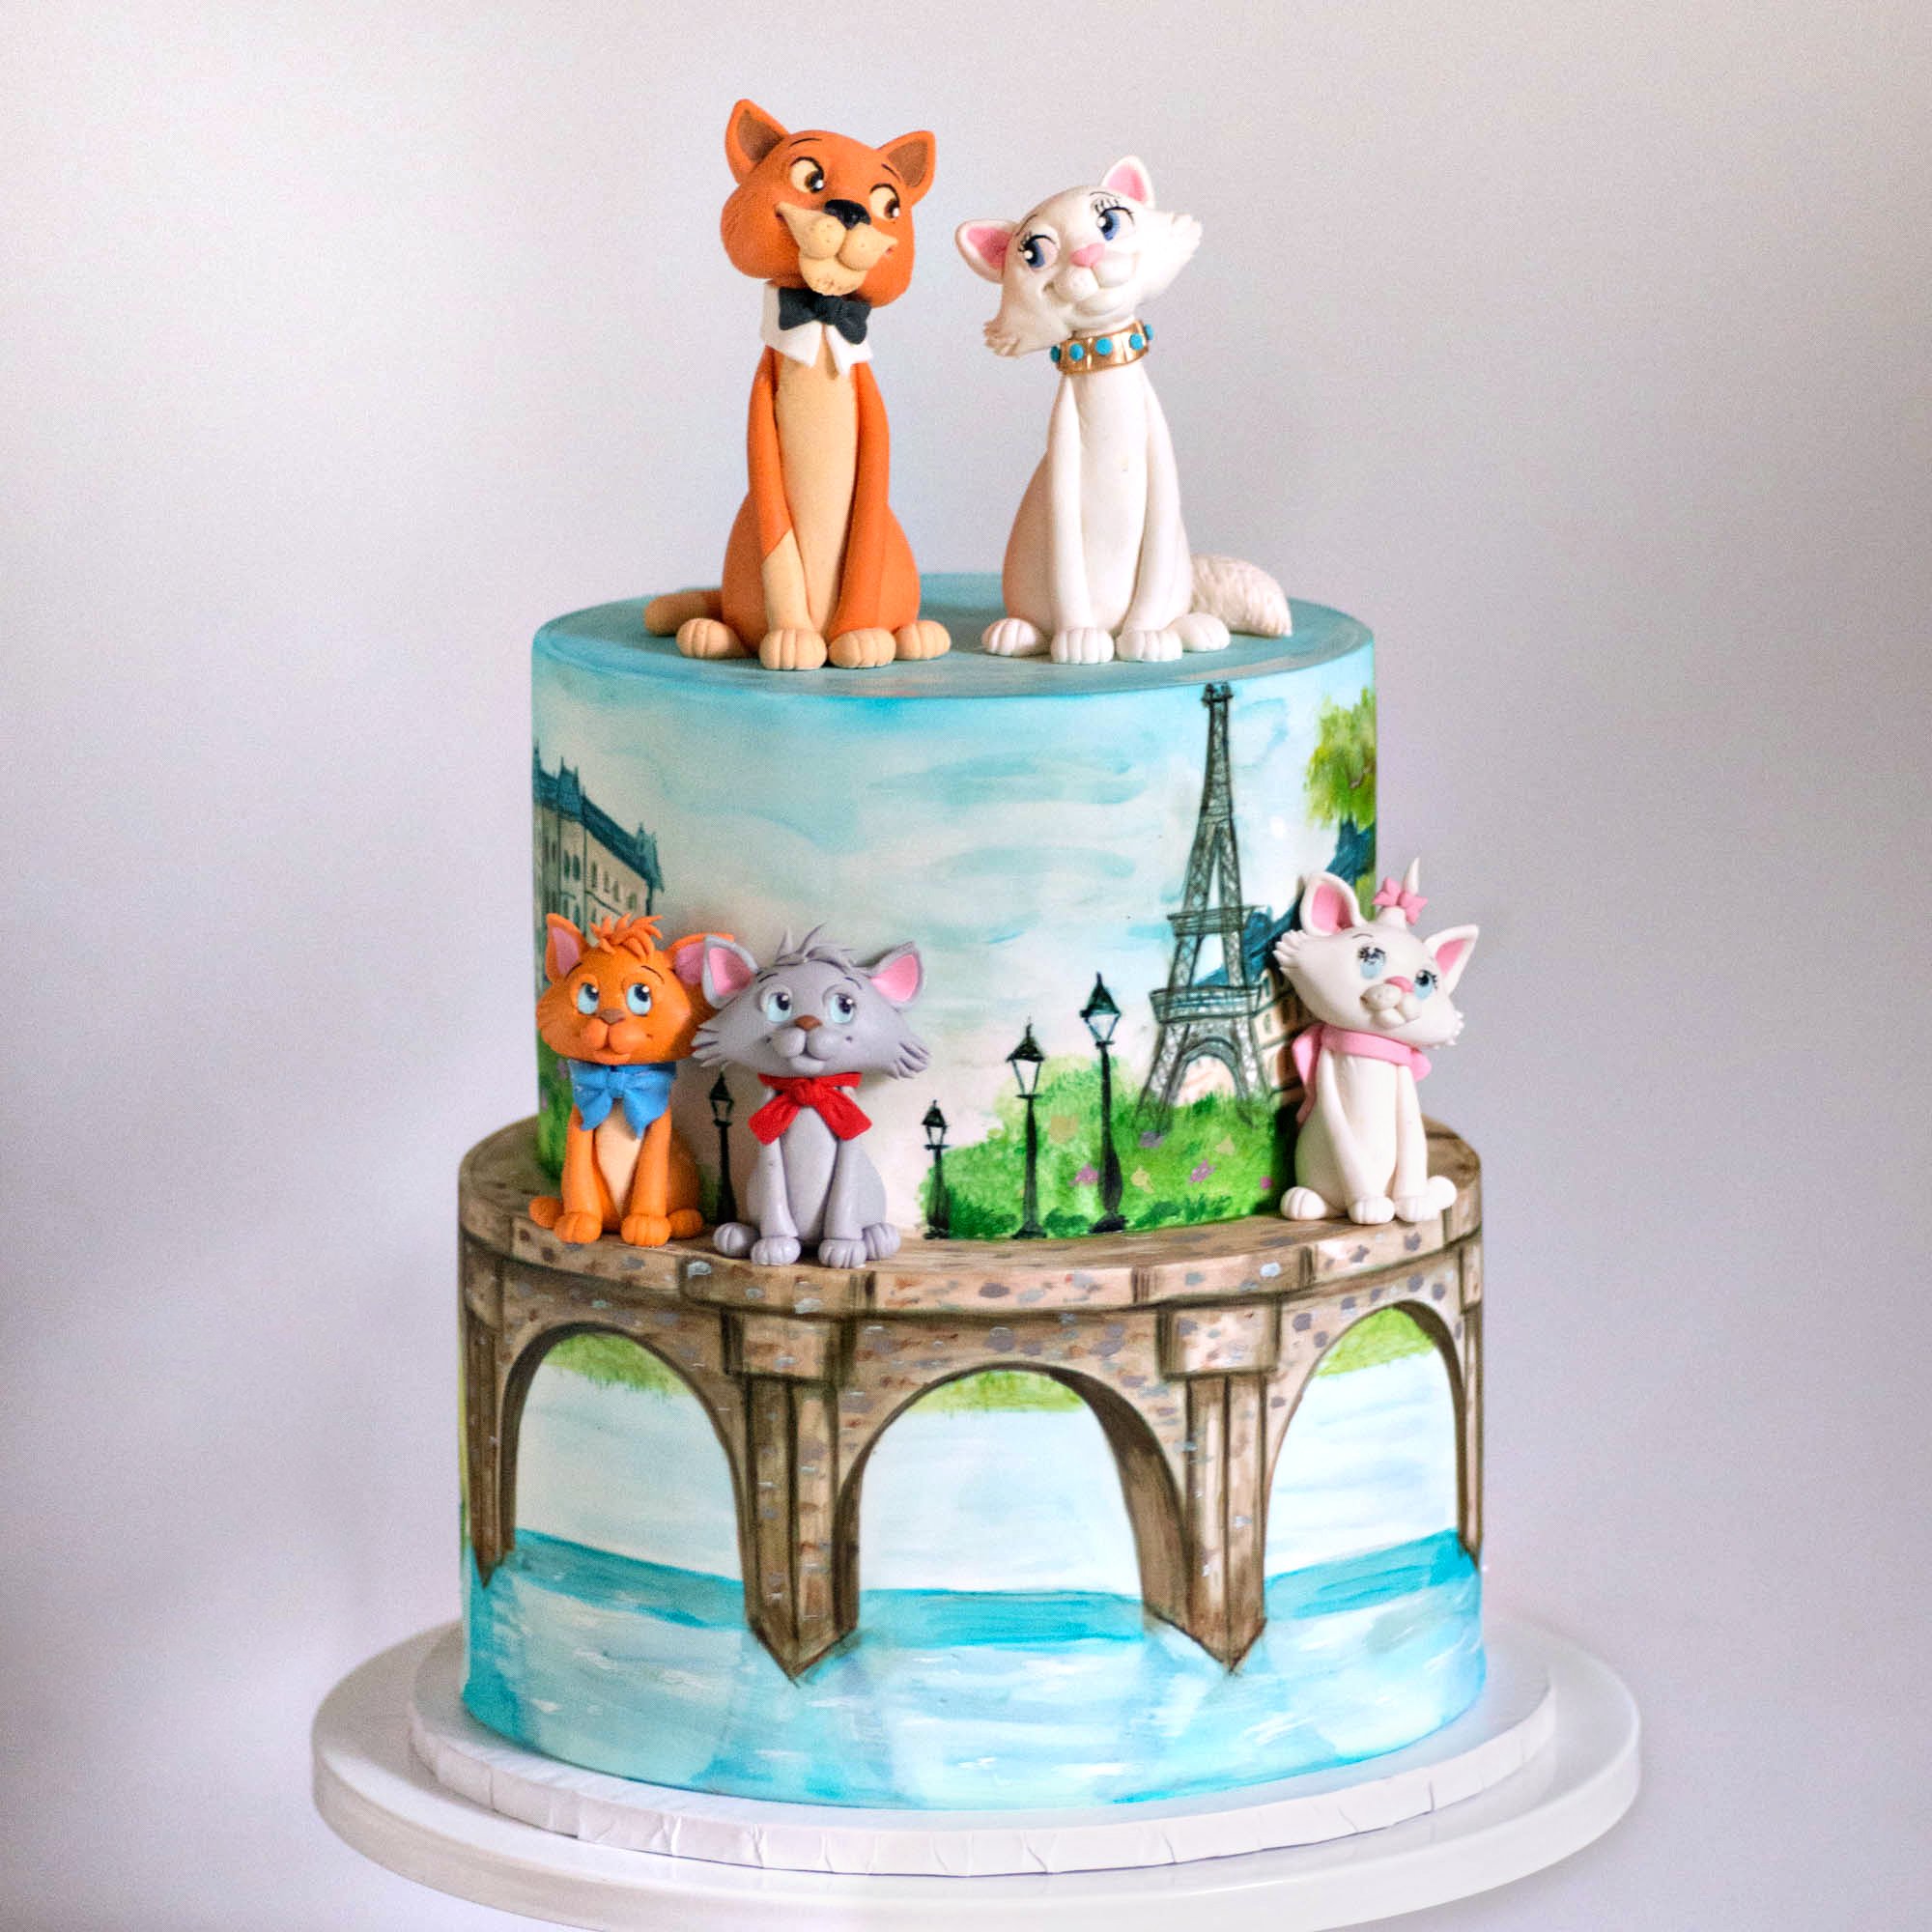 Cute Animals Cake | Animal Theme Cakes for Kids Birthday Parties – Kukkr-suu.vn